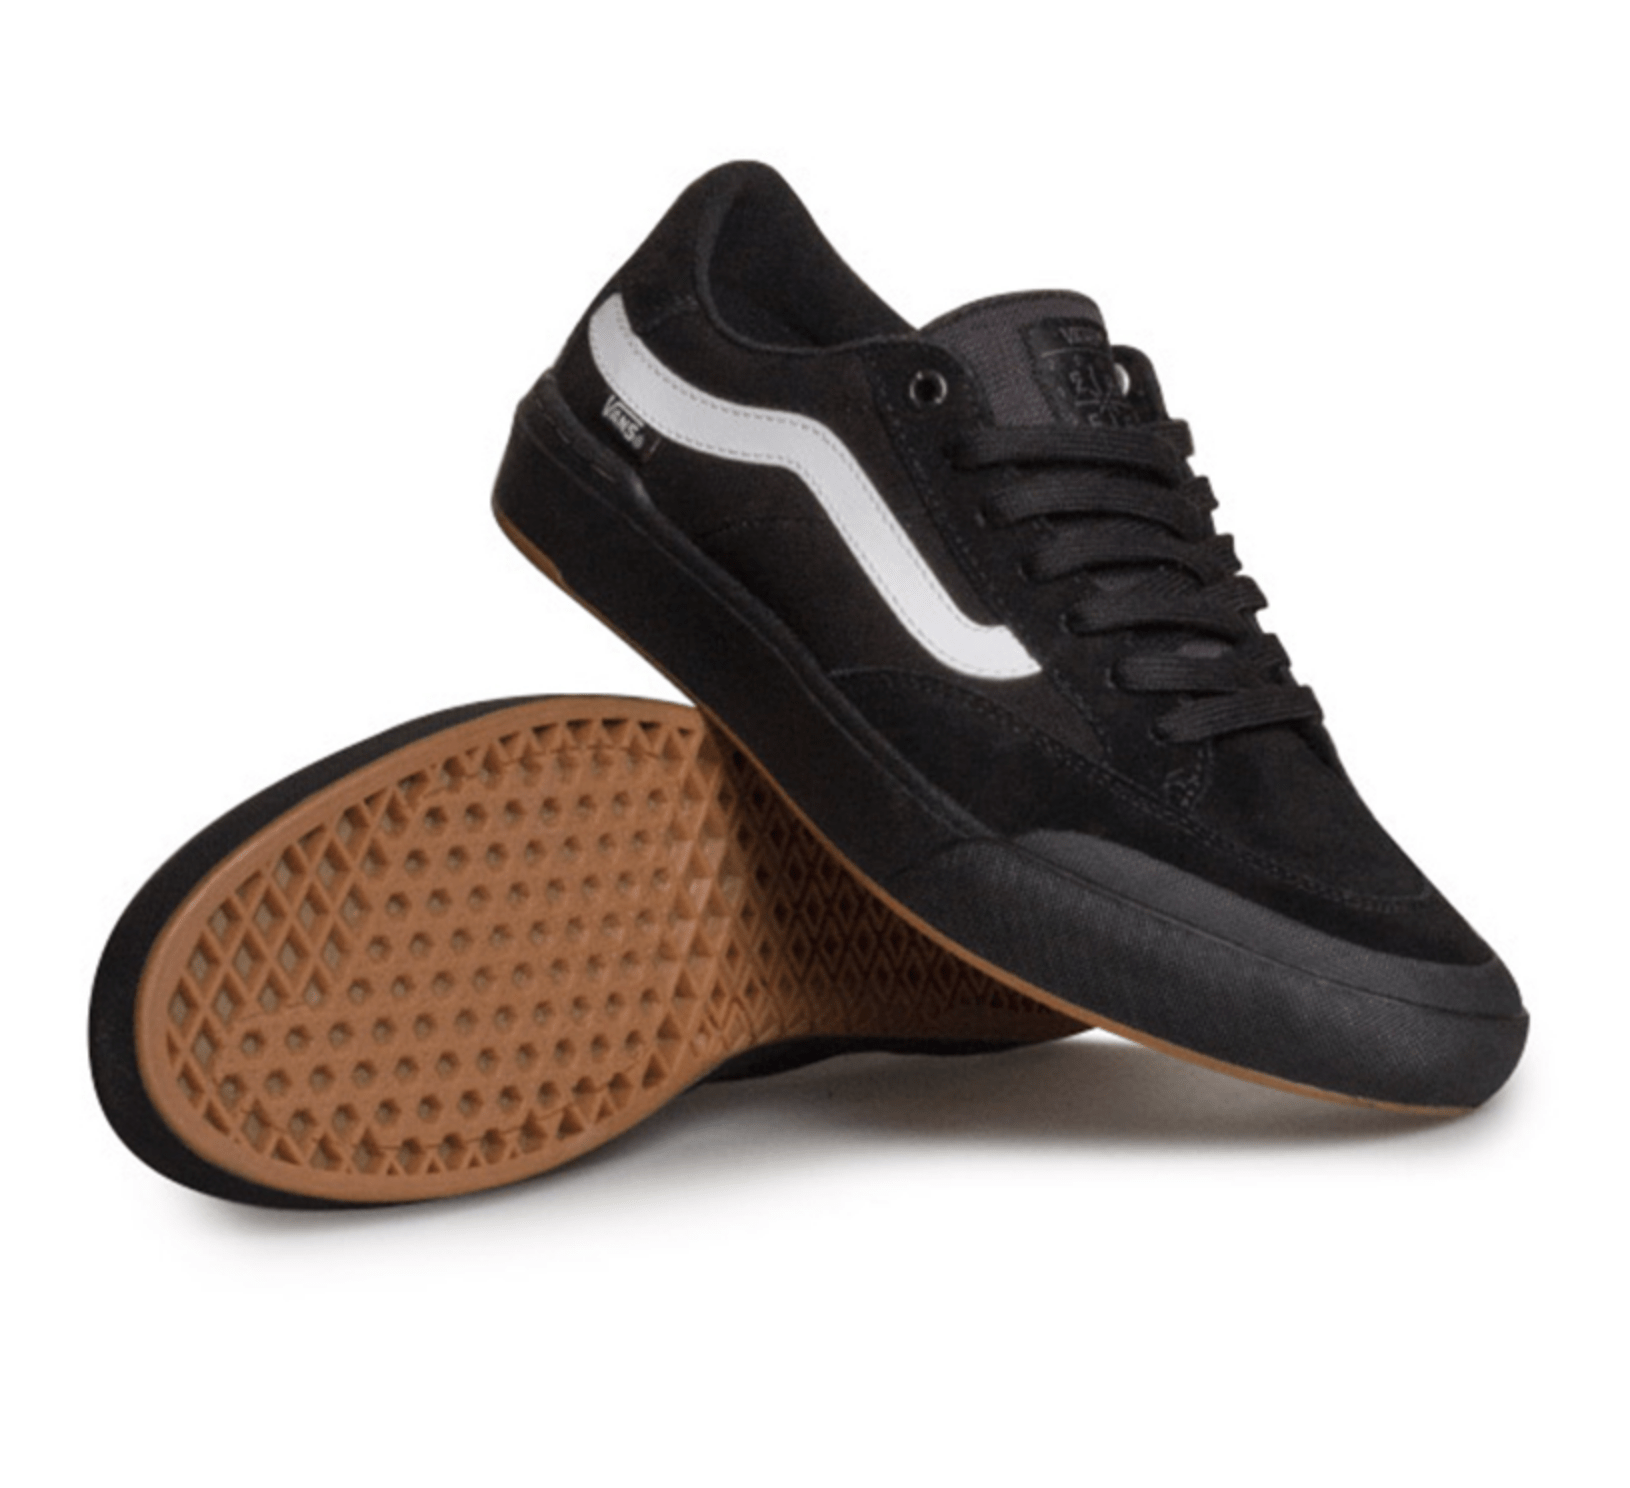 Vans – Berle Pro Skate Shoes